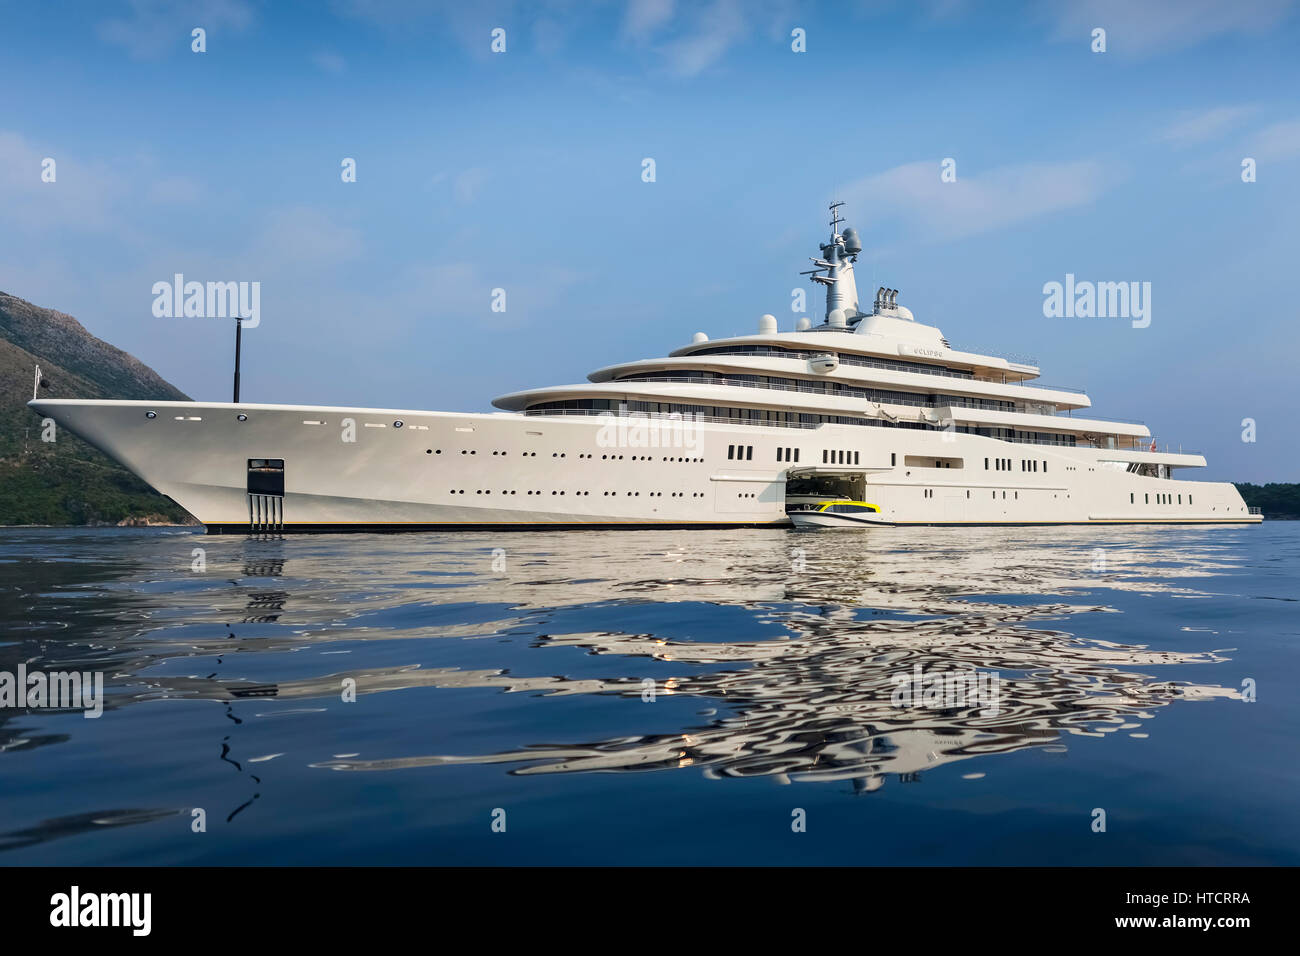 abramovich yacht kroatien